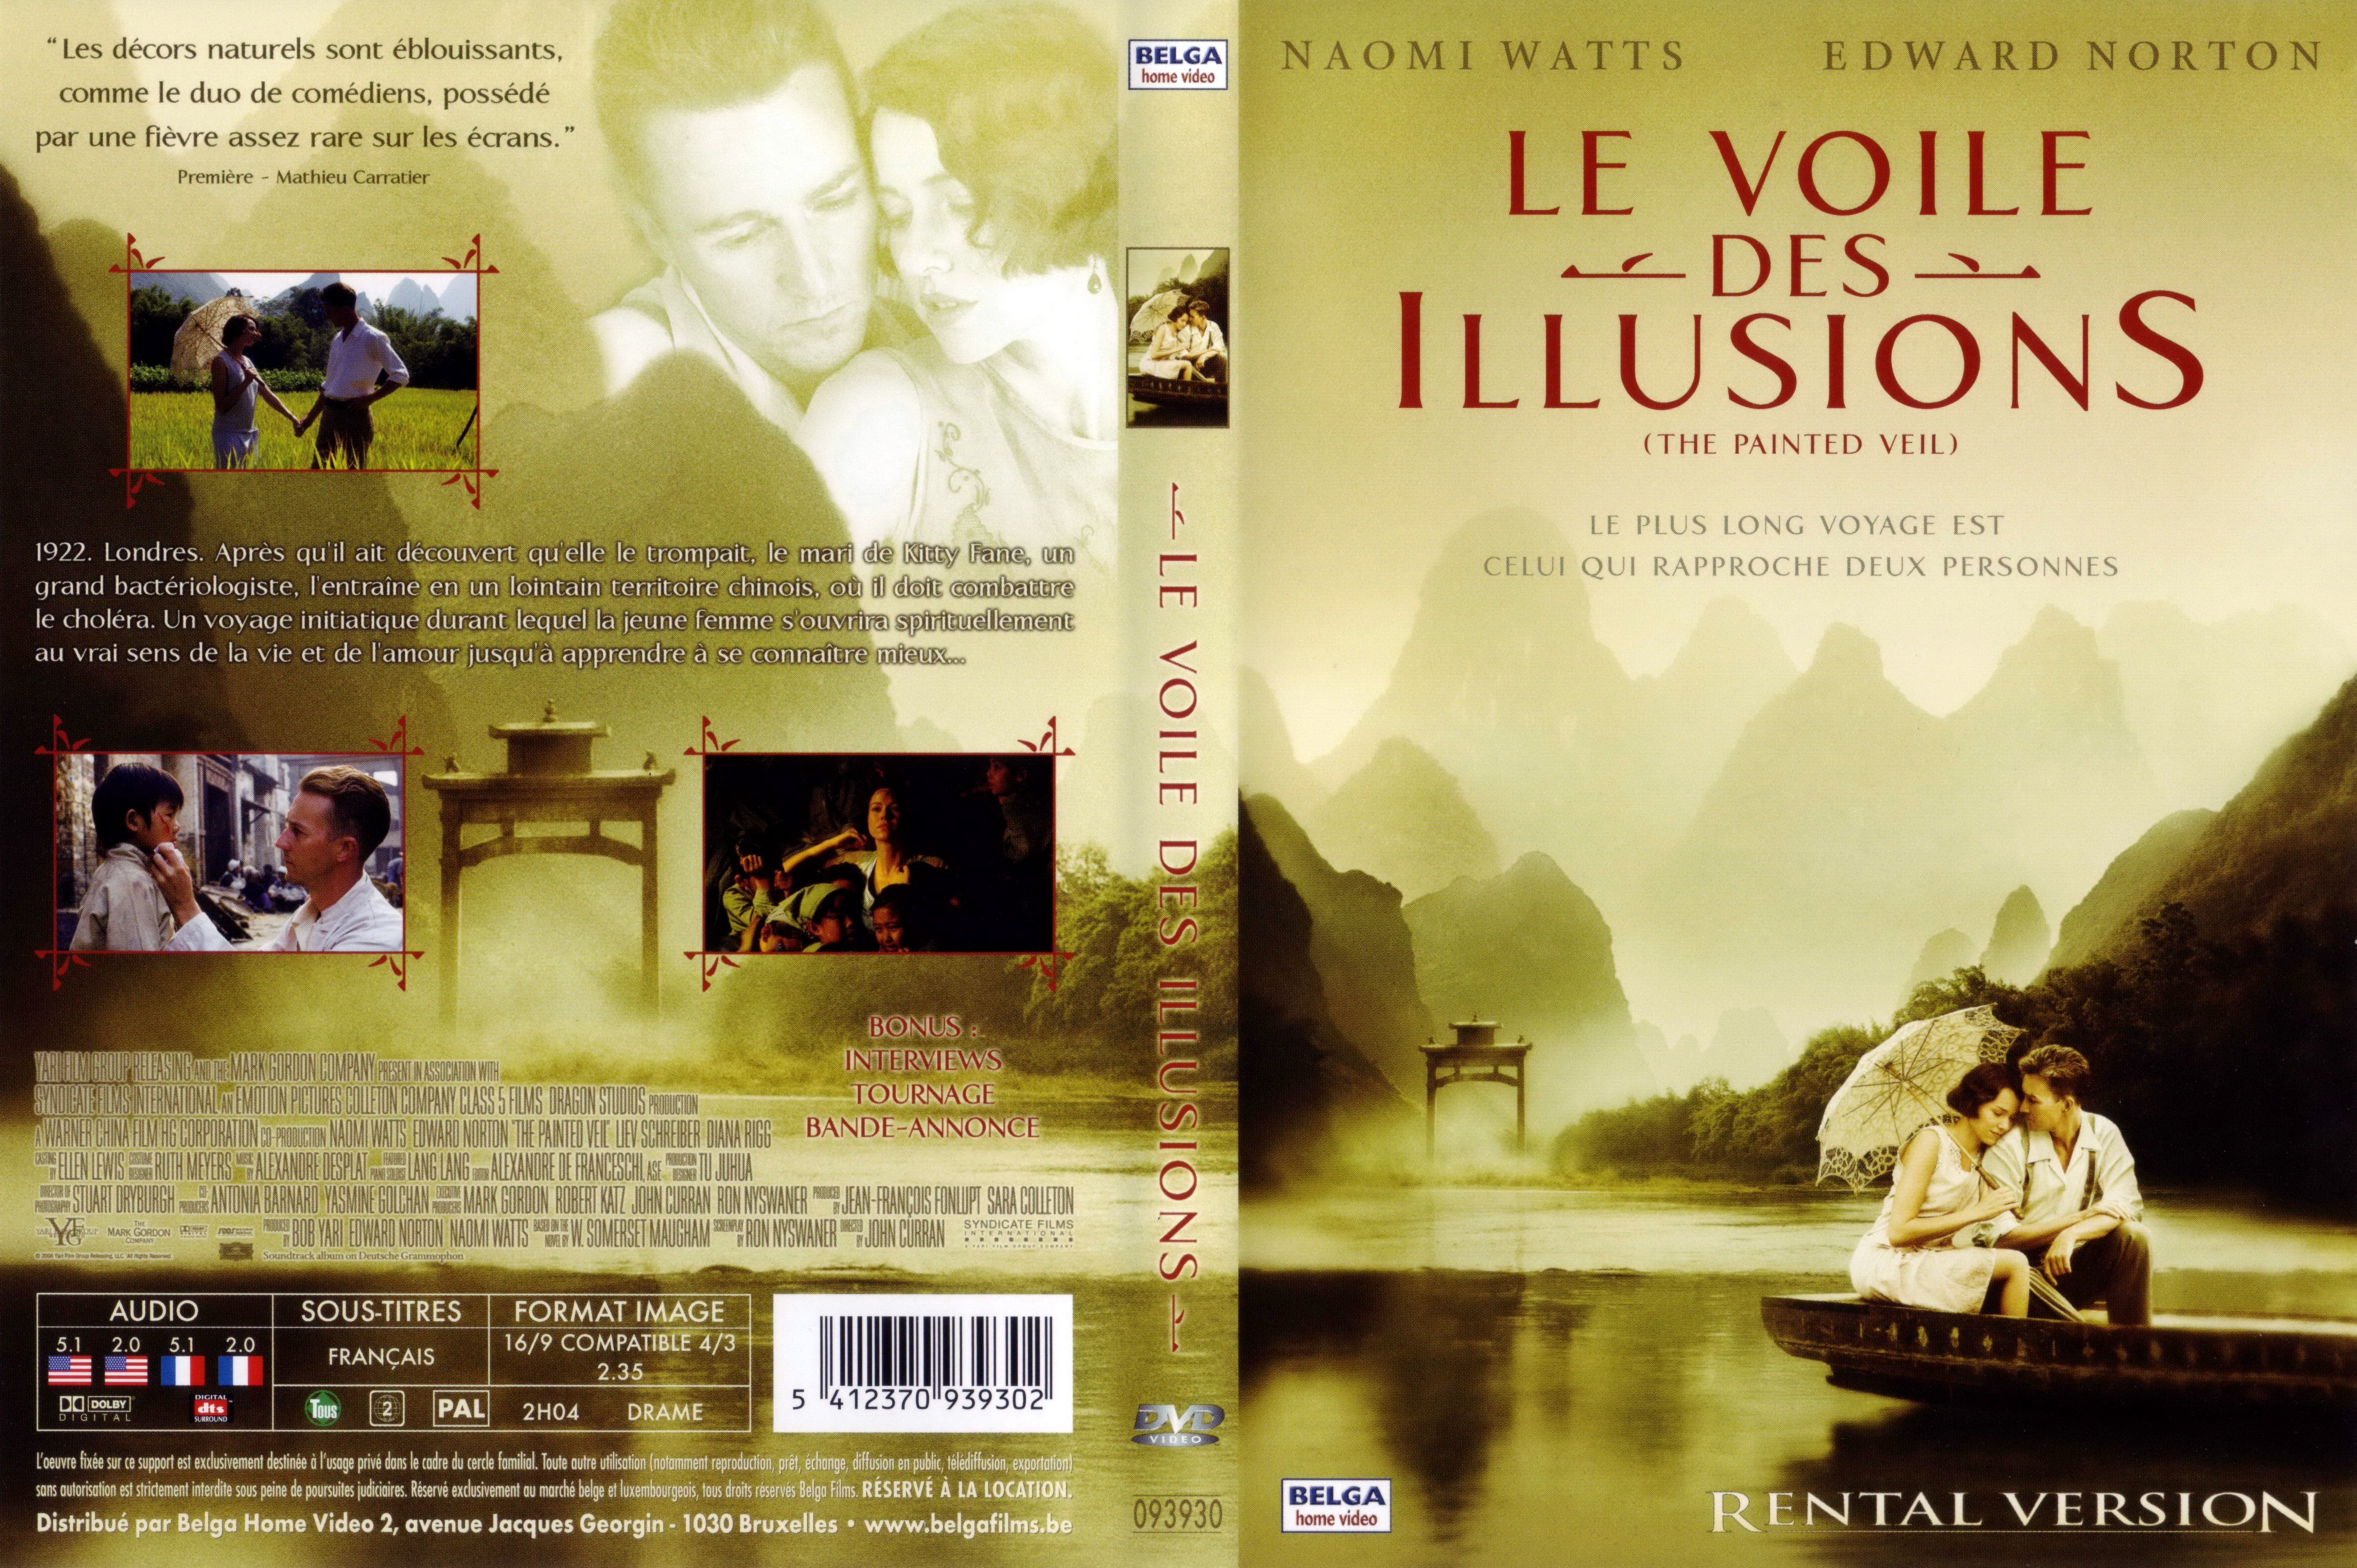 Jaquette DVD Le voile des illusions v2